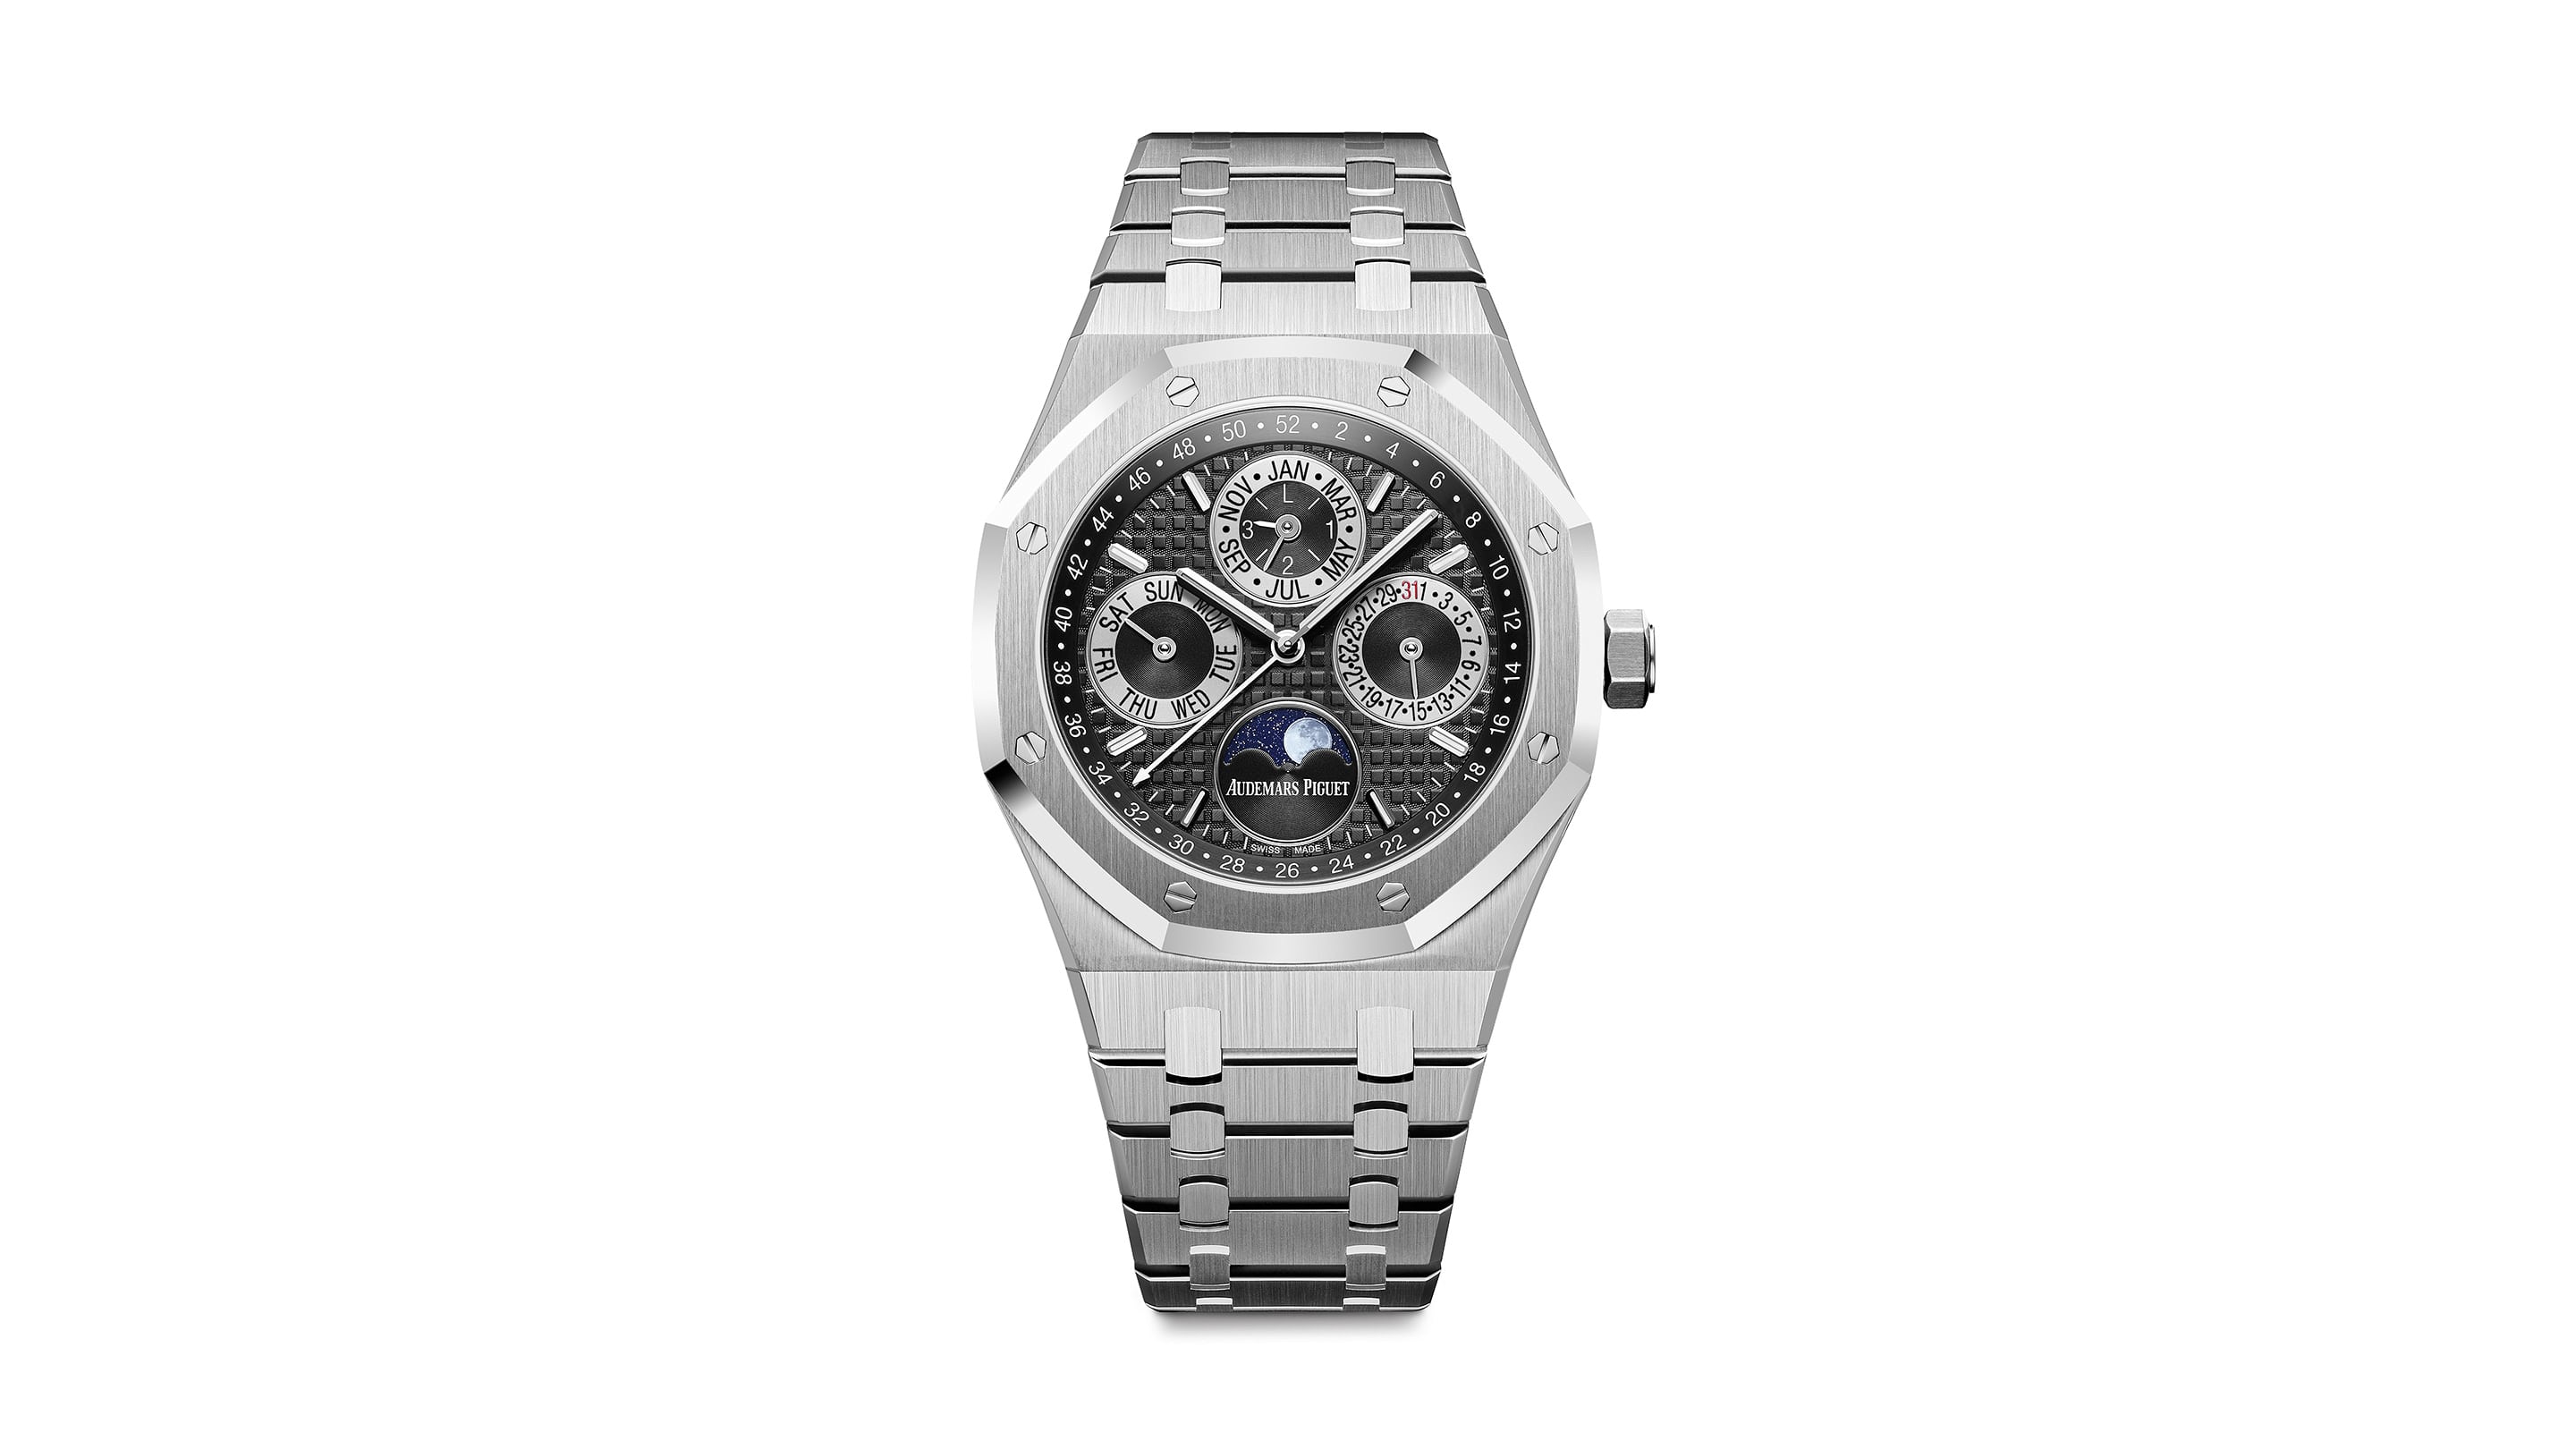 Five stunning platinum watches